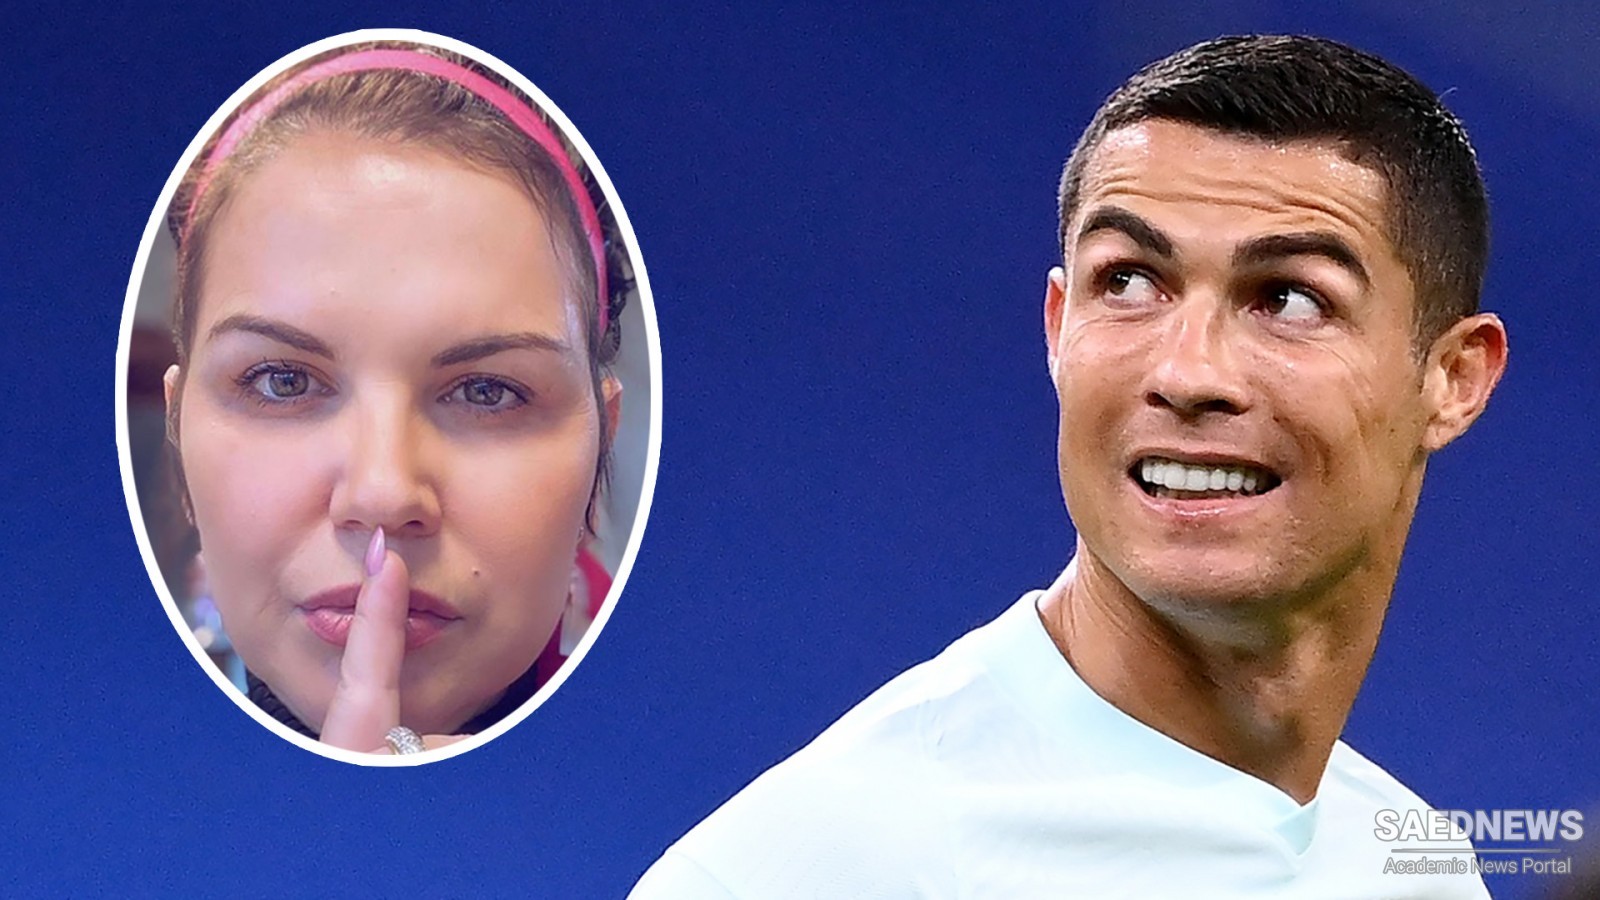 "Biggest fraud I’ve seen": Chris Ronaldo's Sister